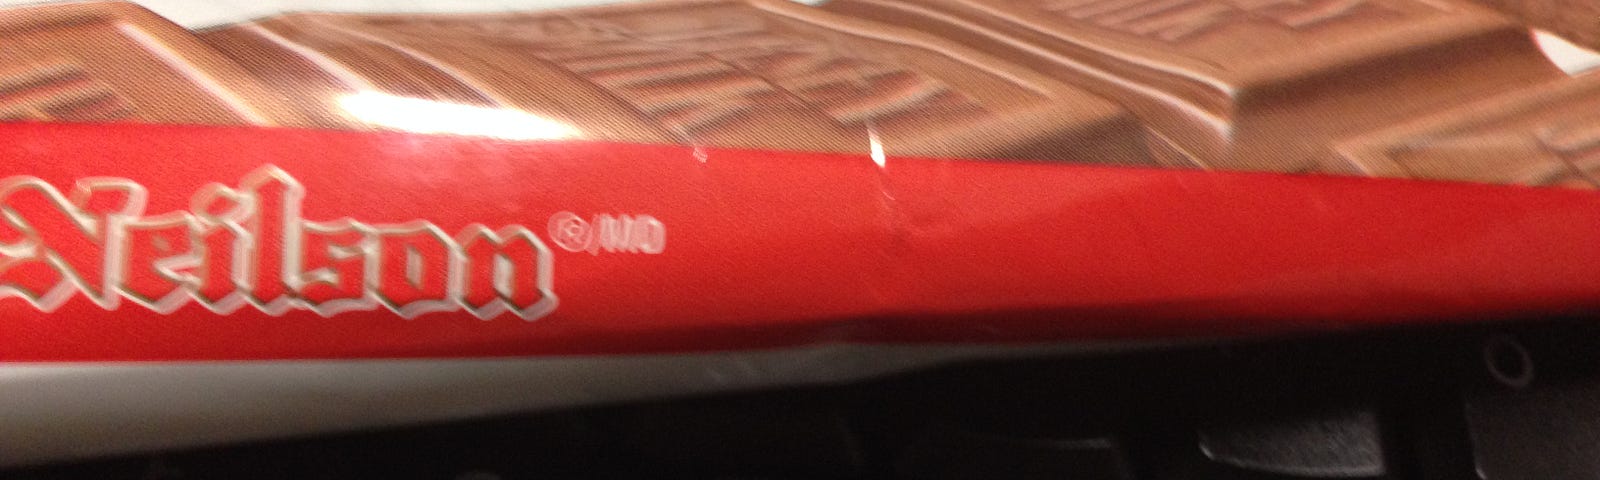 A keyboard under a chocolate bar wrapper